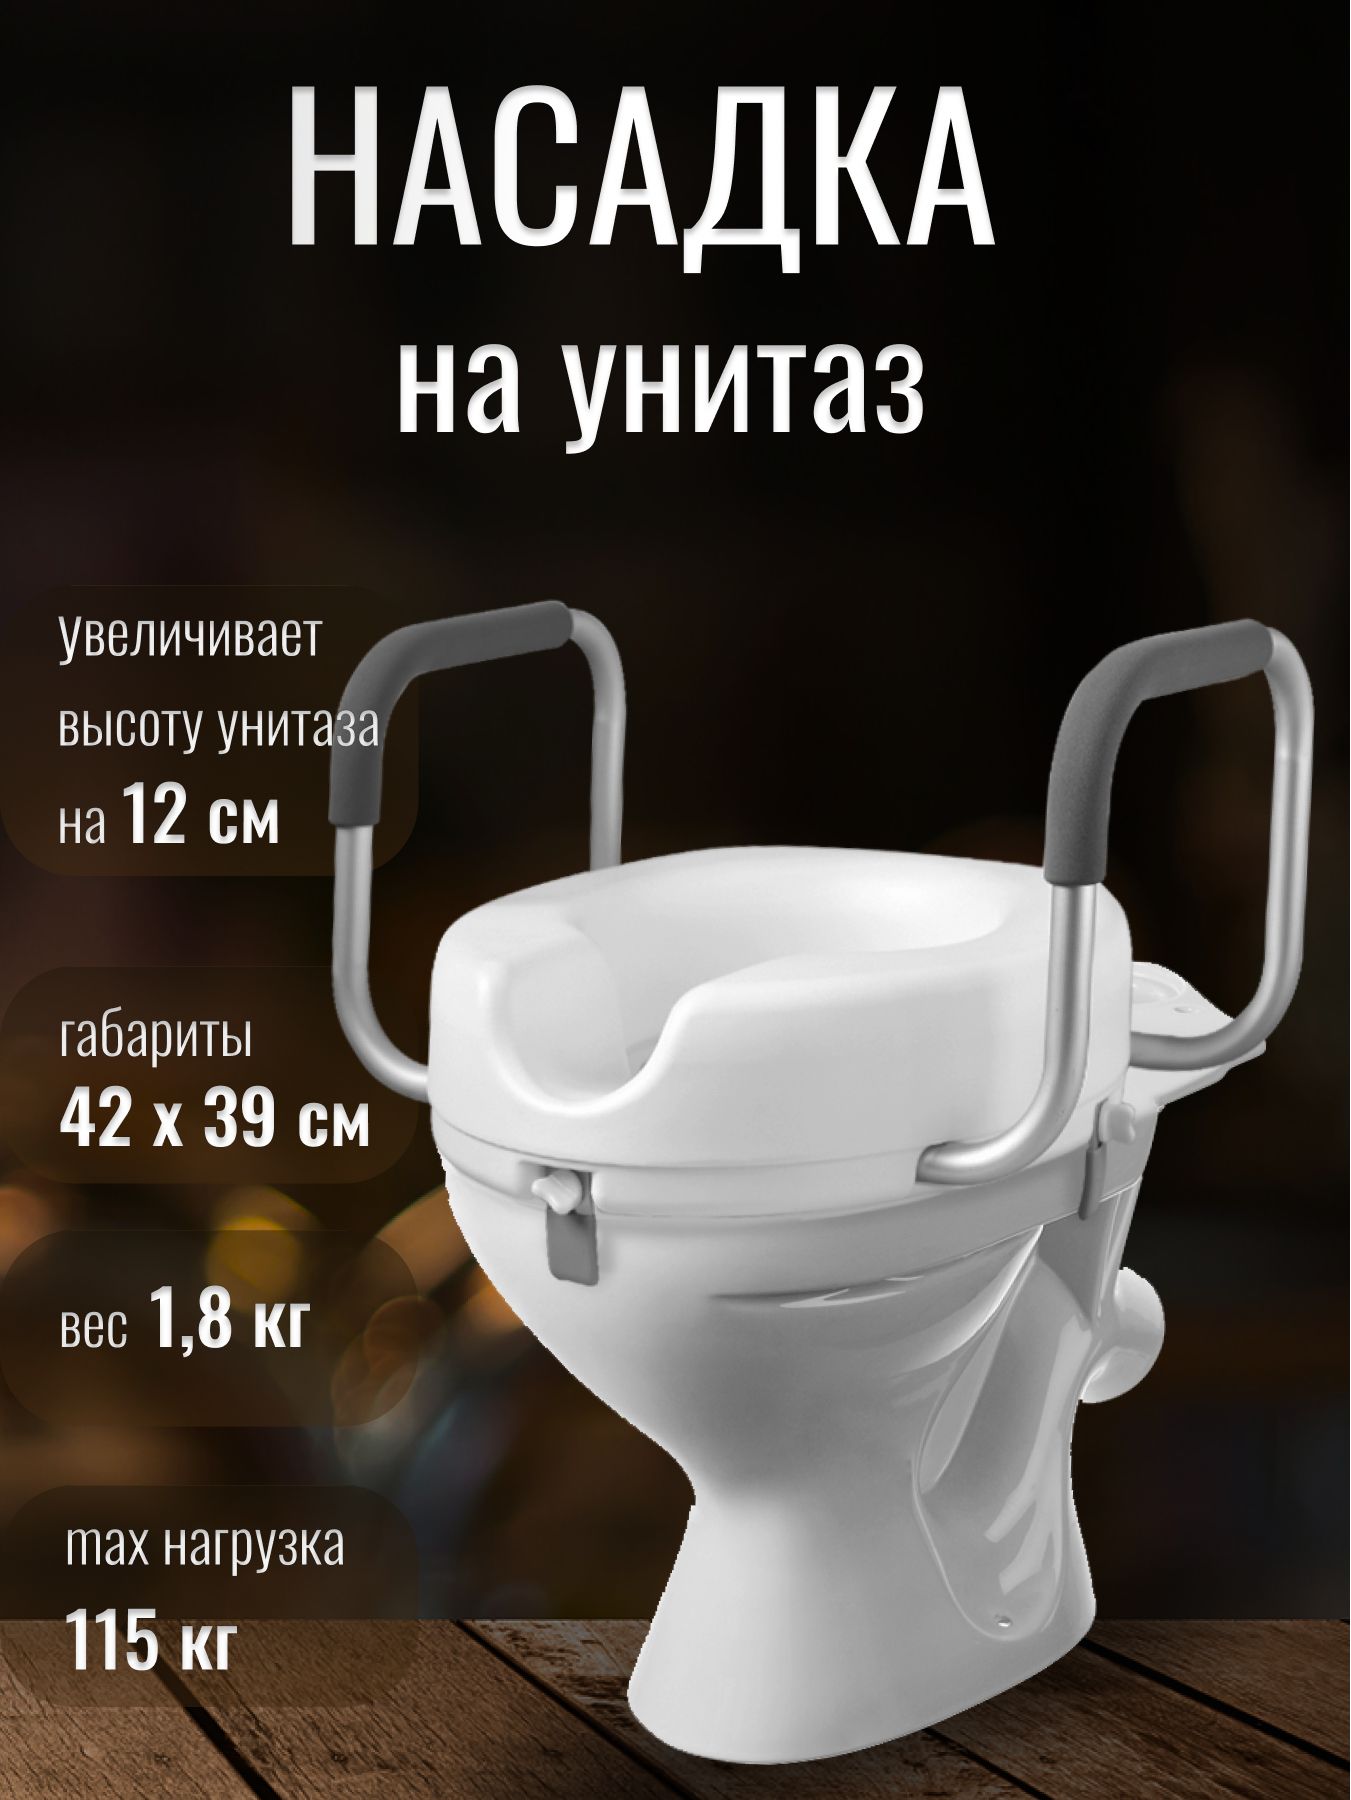 Насадка на унитаз после операции купить | Цена накладки на туалет в Москве